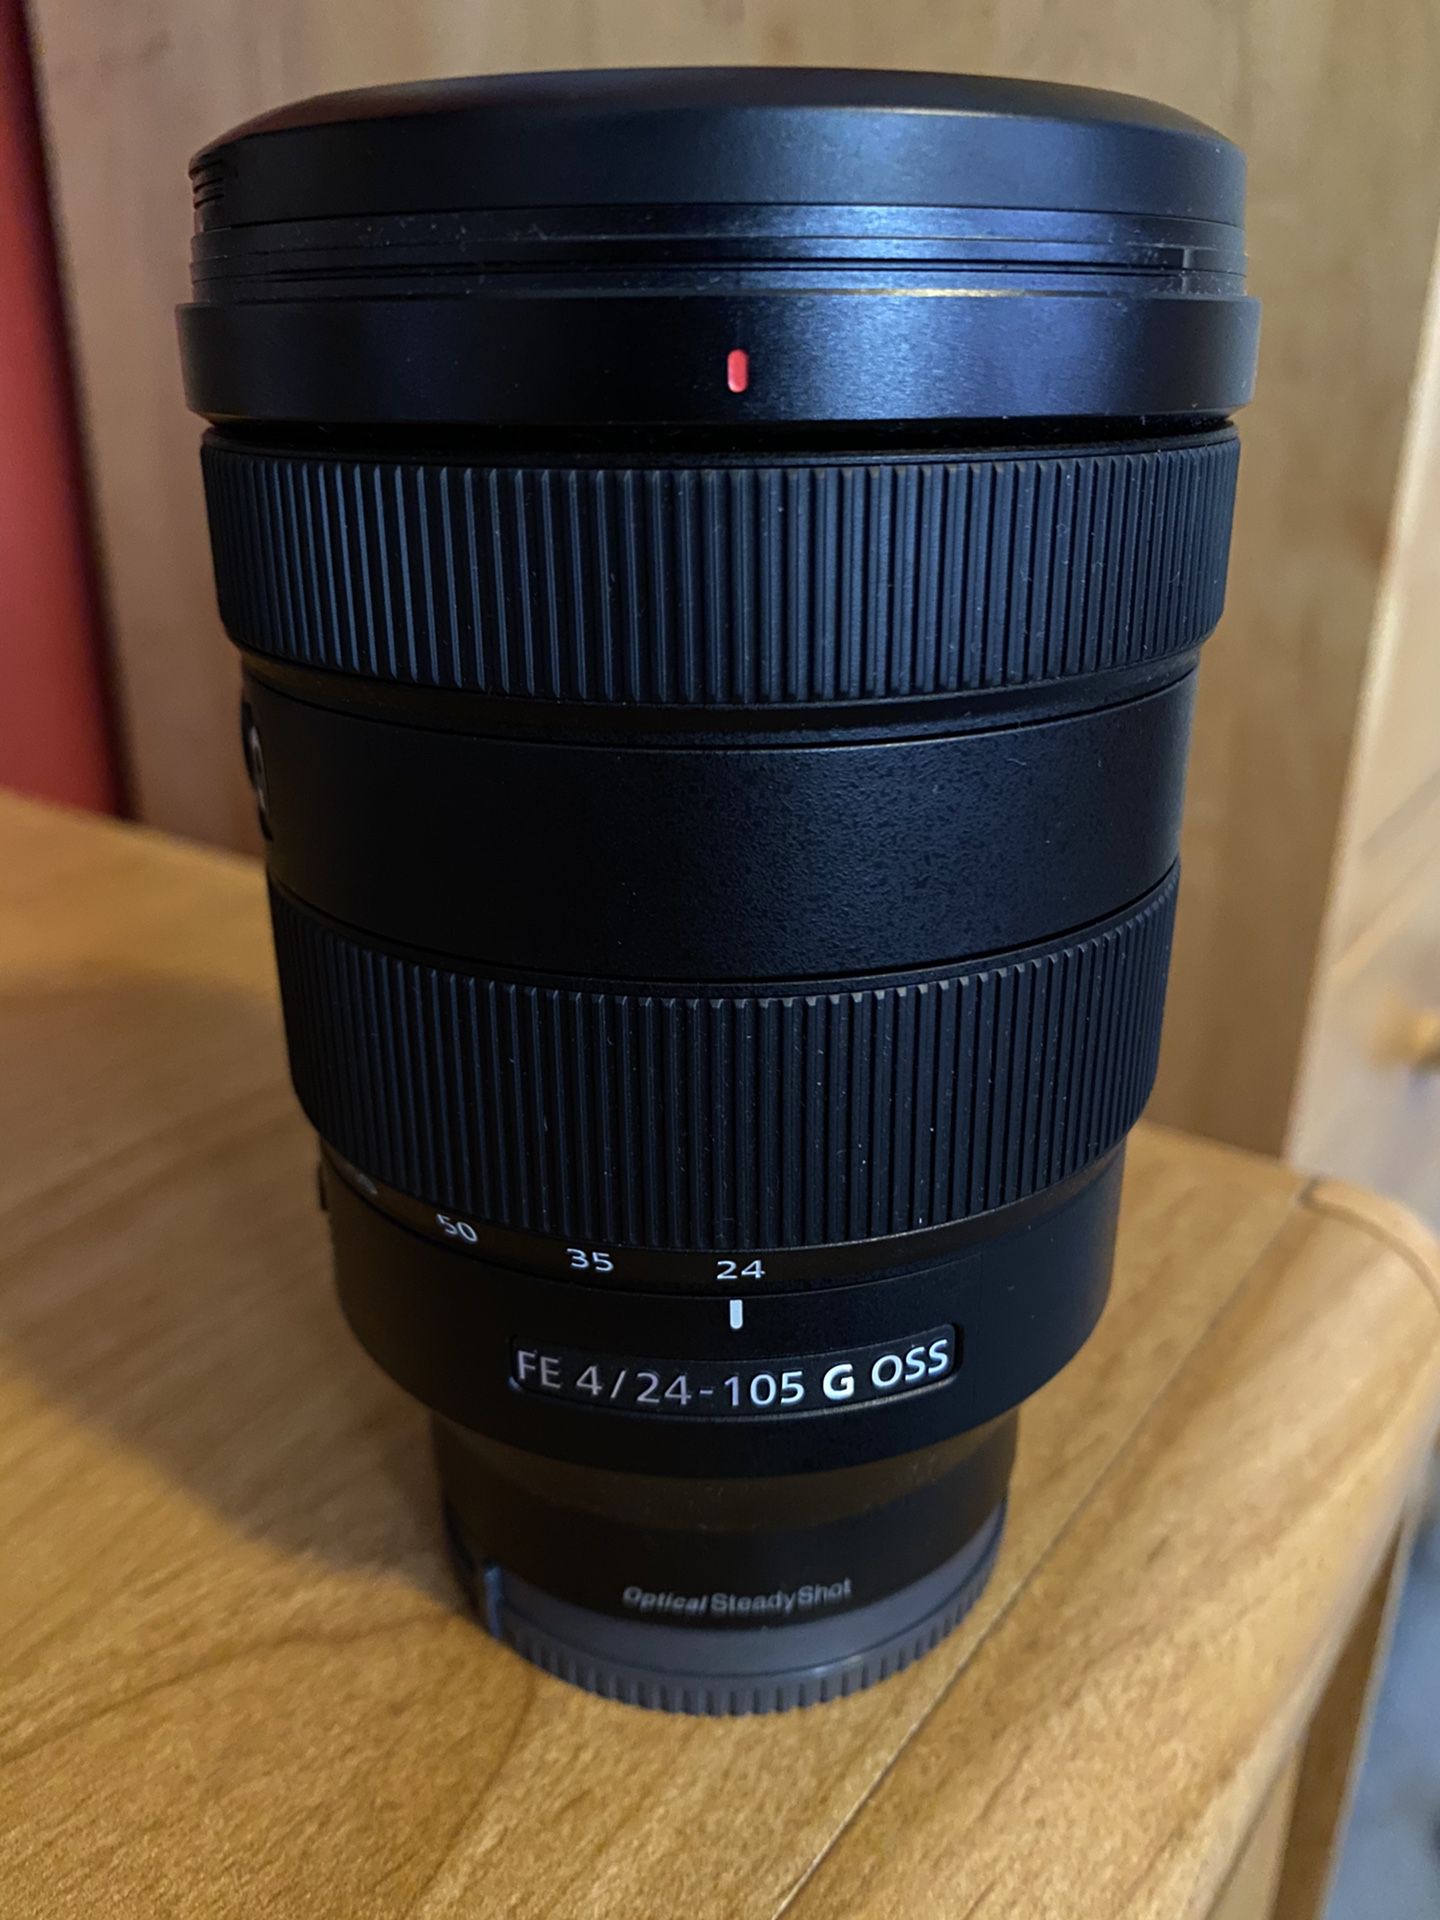 Sony G Lens F4 24-105 OSS